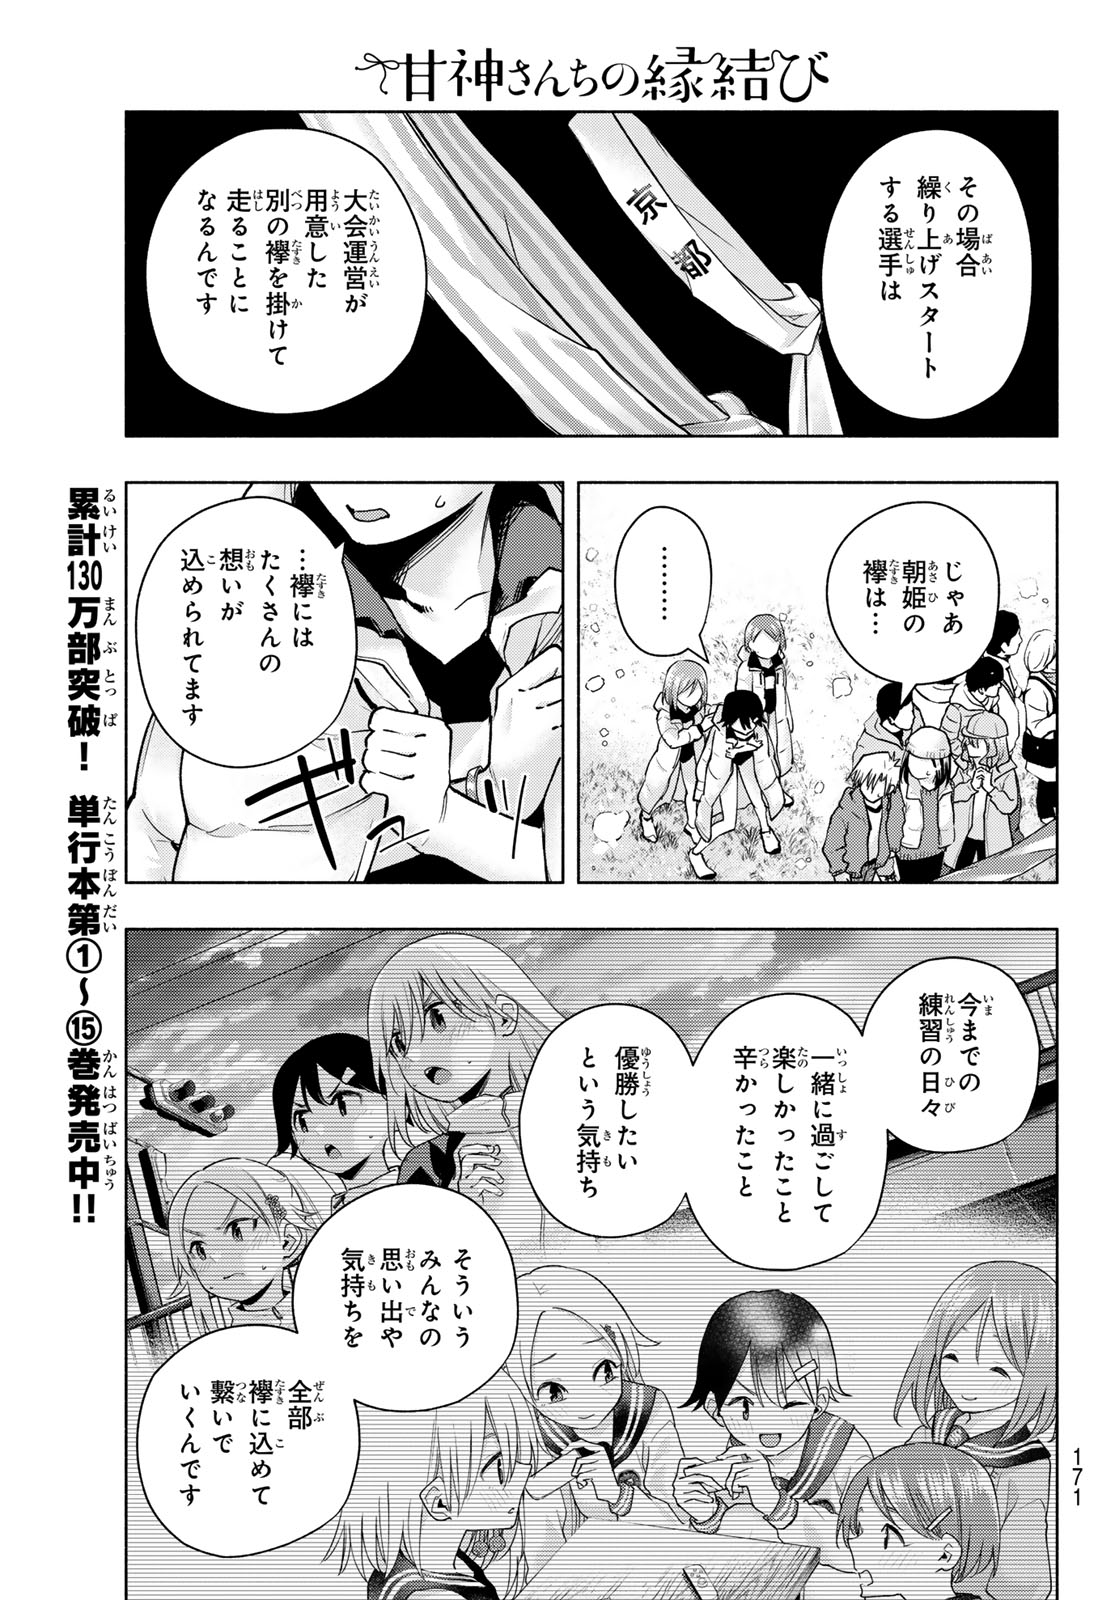 Amagami-san Chi no Enmusubi - Chapter 144 - Page 11